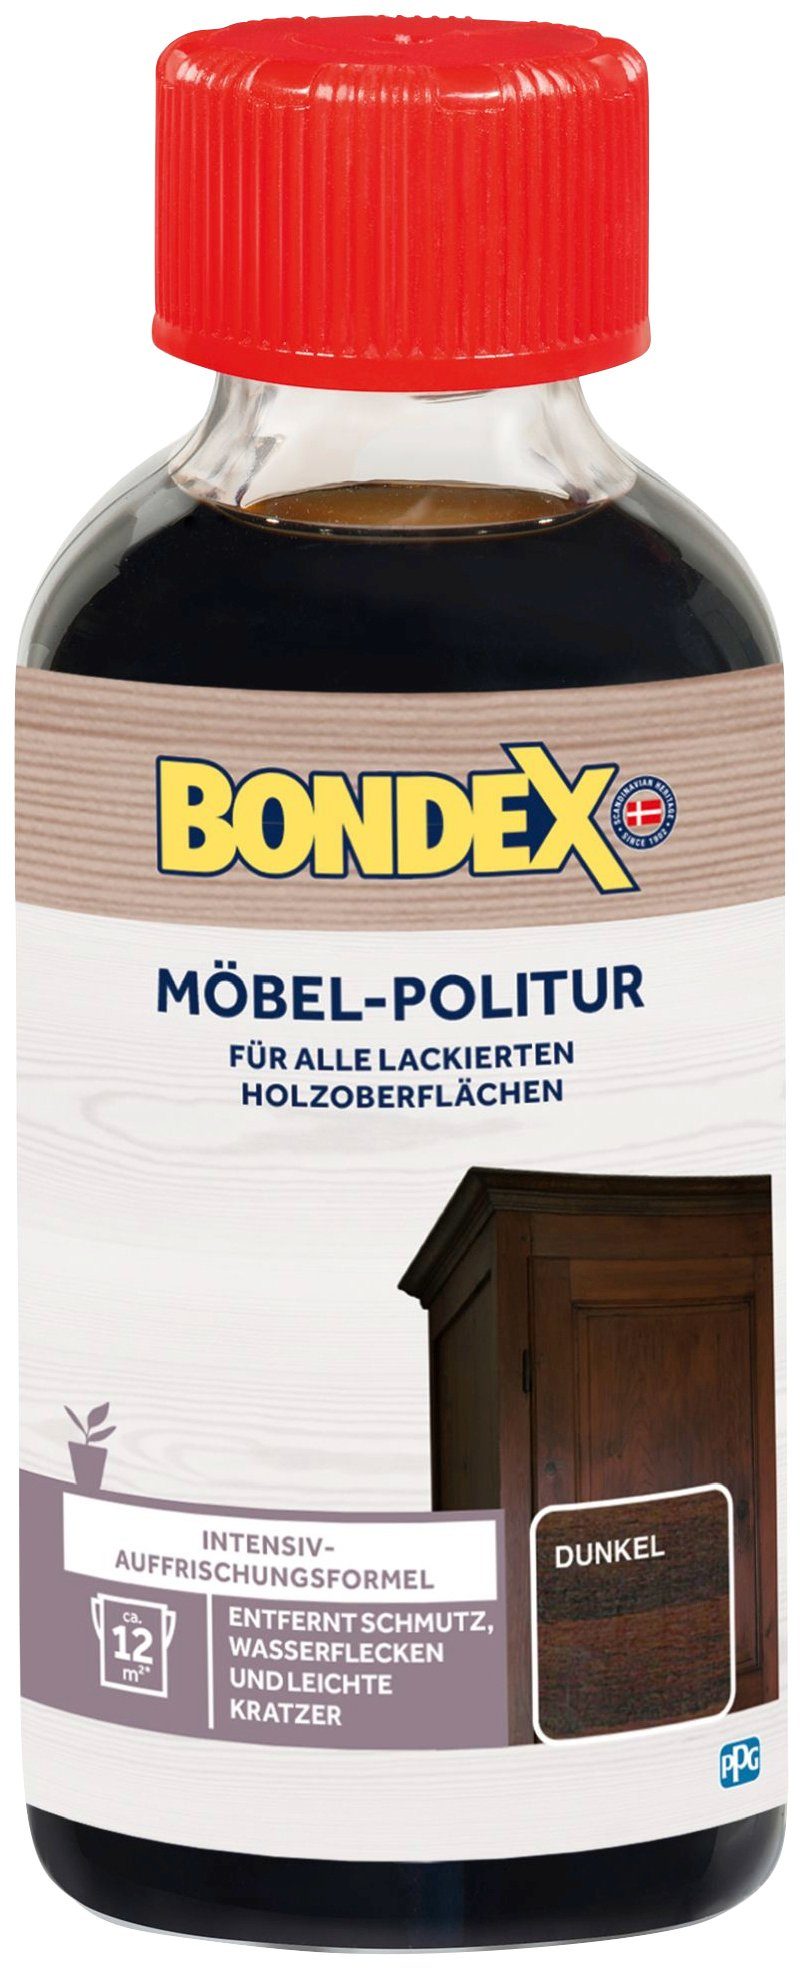 Bondex MÖBEL-POLITUR Dunkel l Holzpflegeöl, braun 0,15